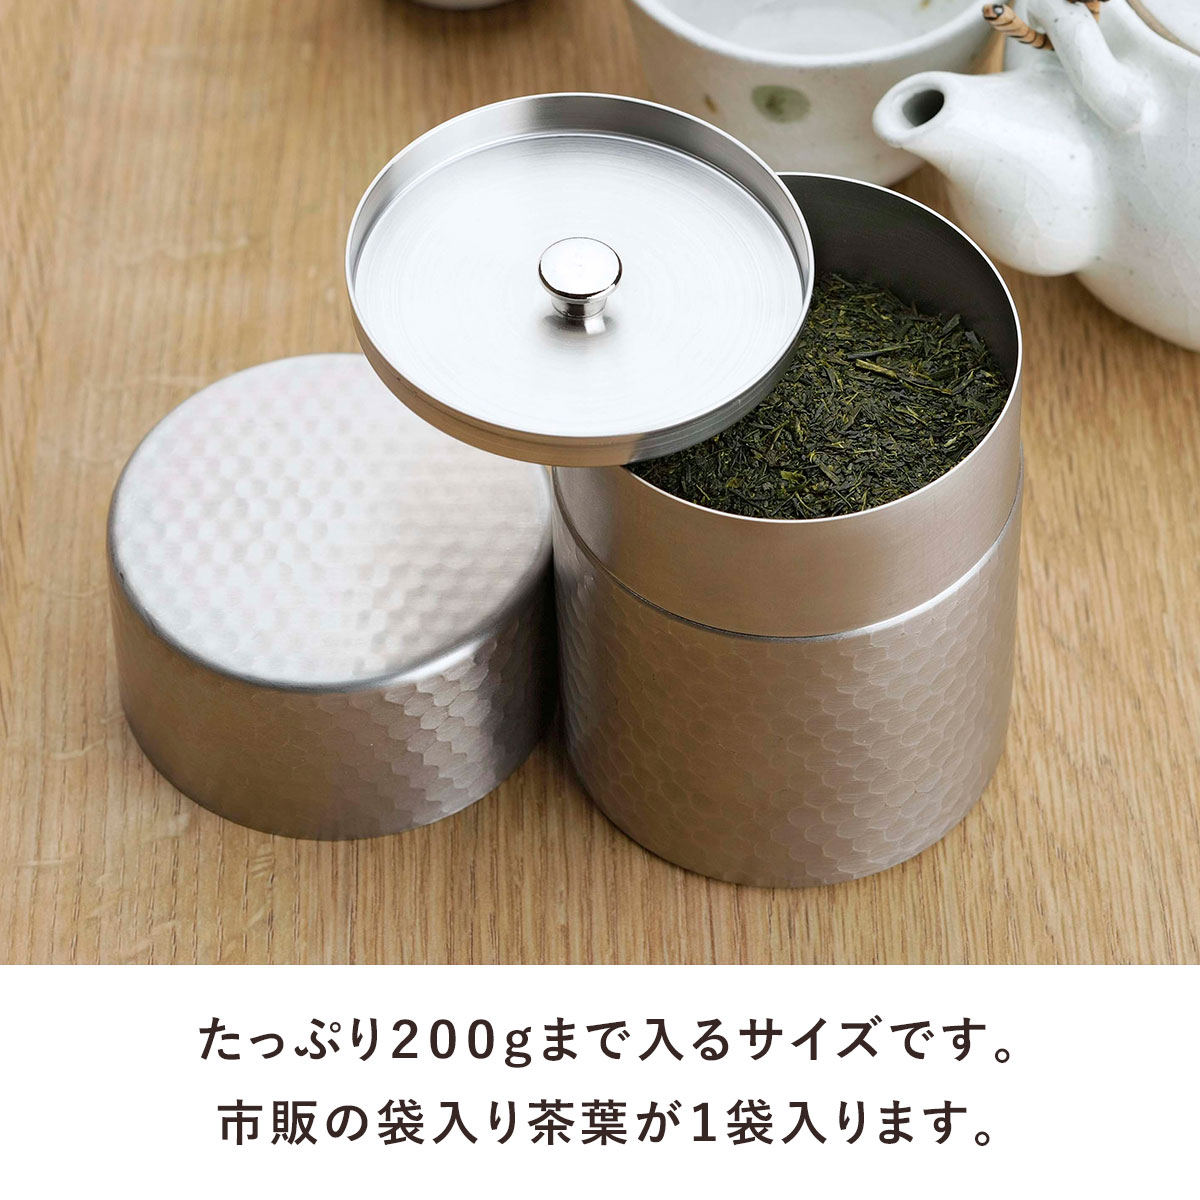 茶考具 茶筒 日本製 ステンレス お茶 茶葉 お茶入れ 密閉 下村企販